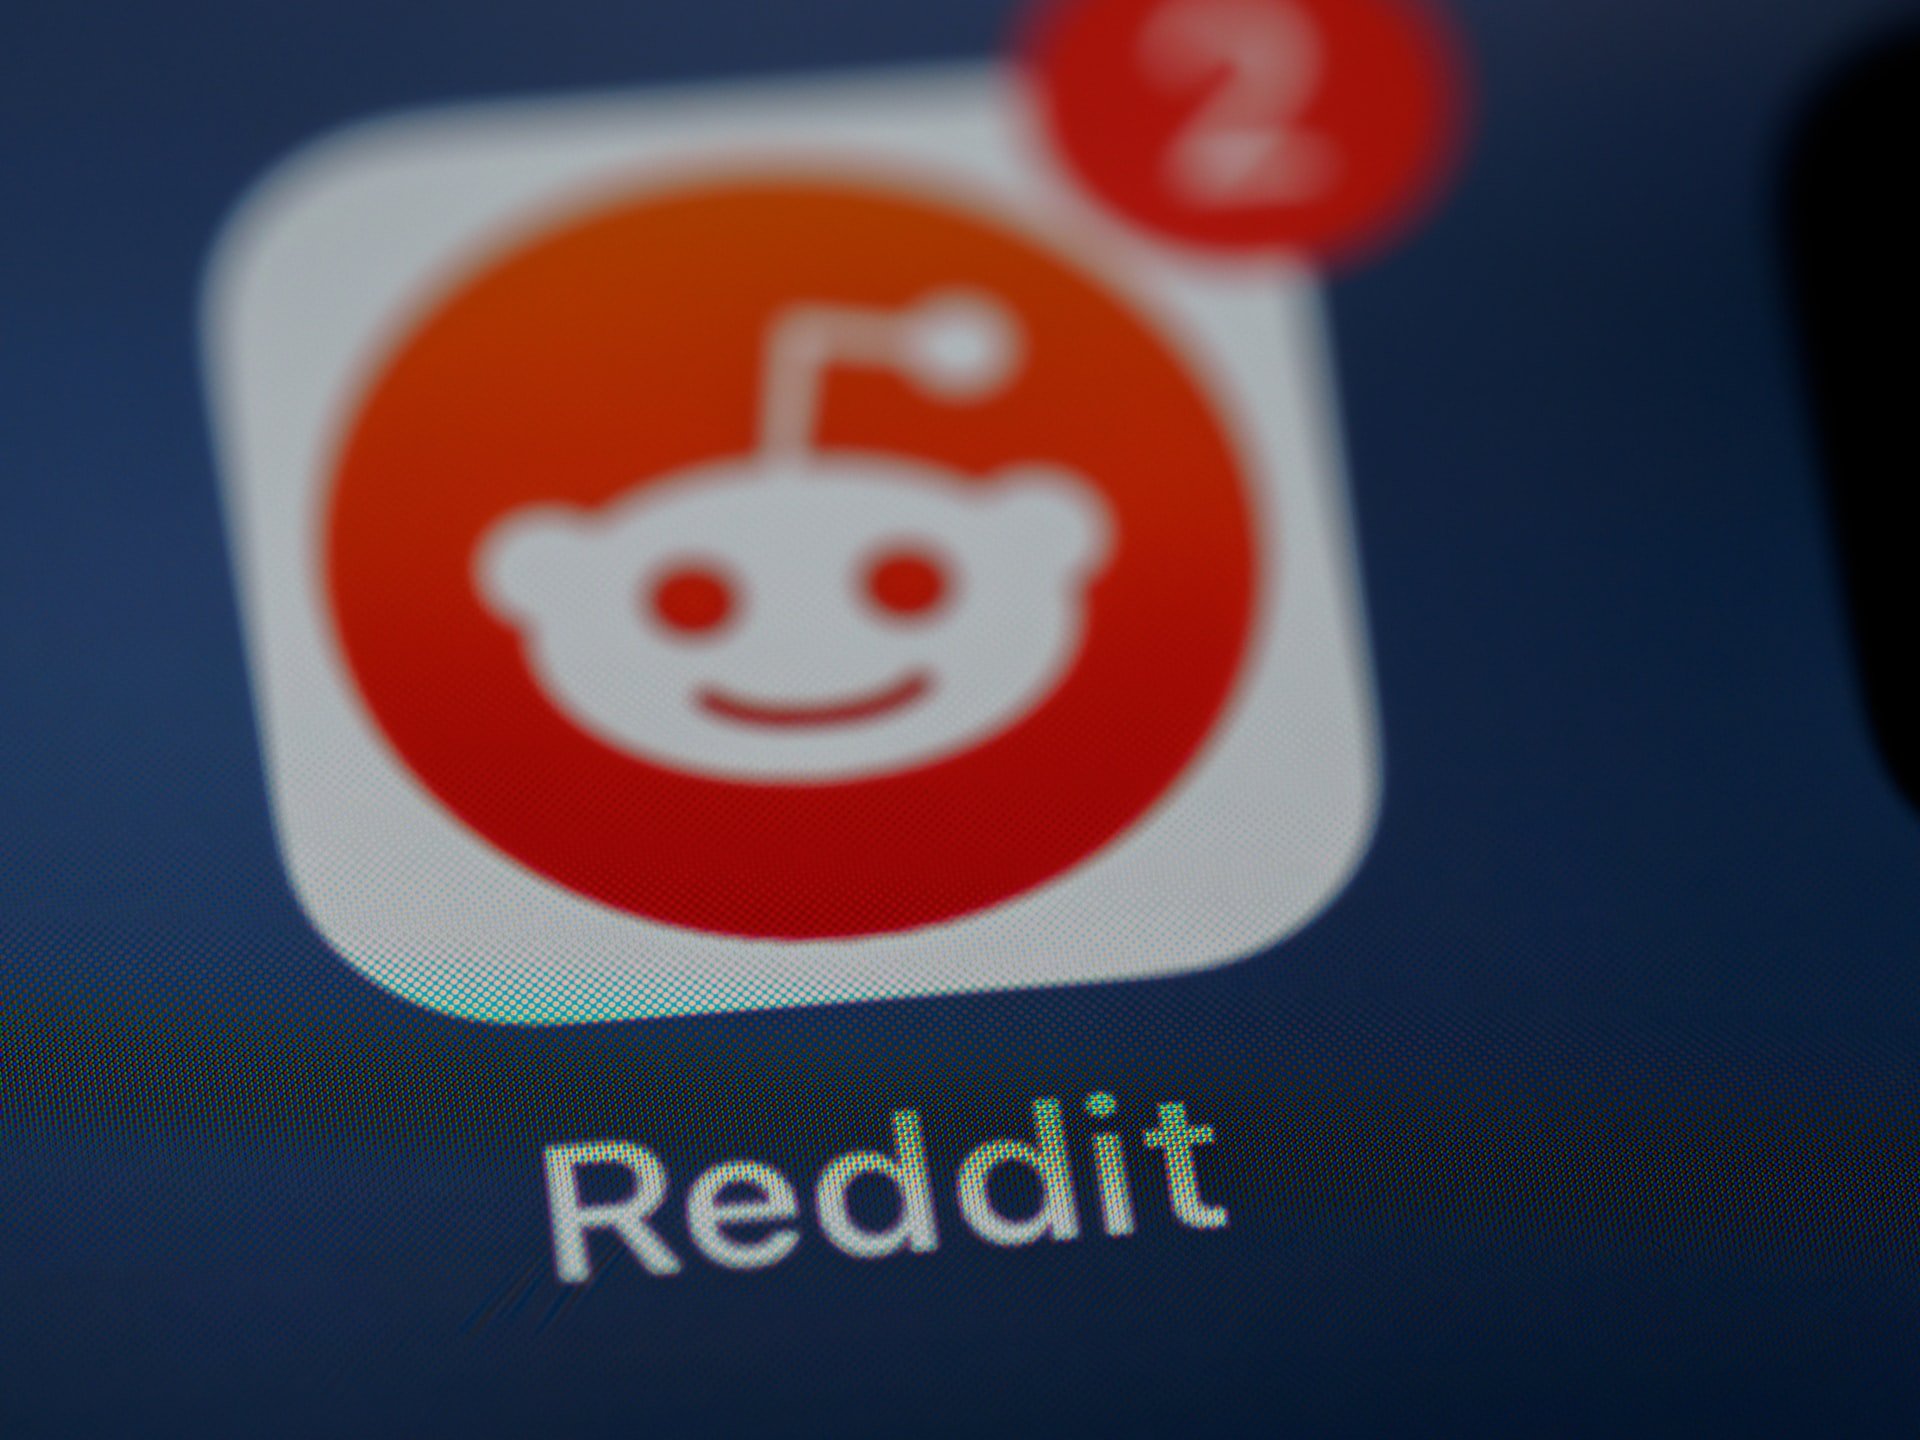 Le logo de Reddit | Source : Unsplash